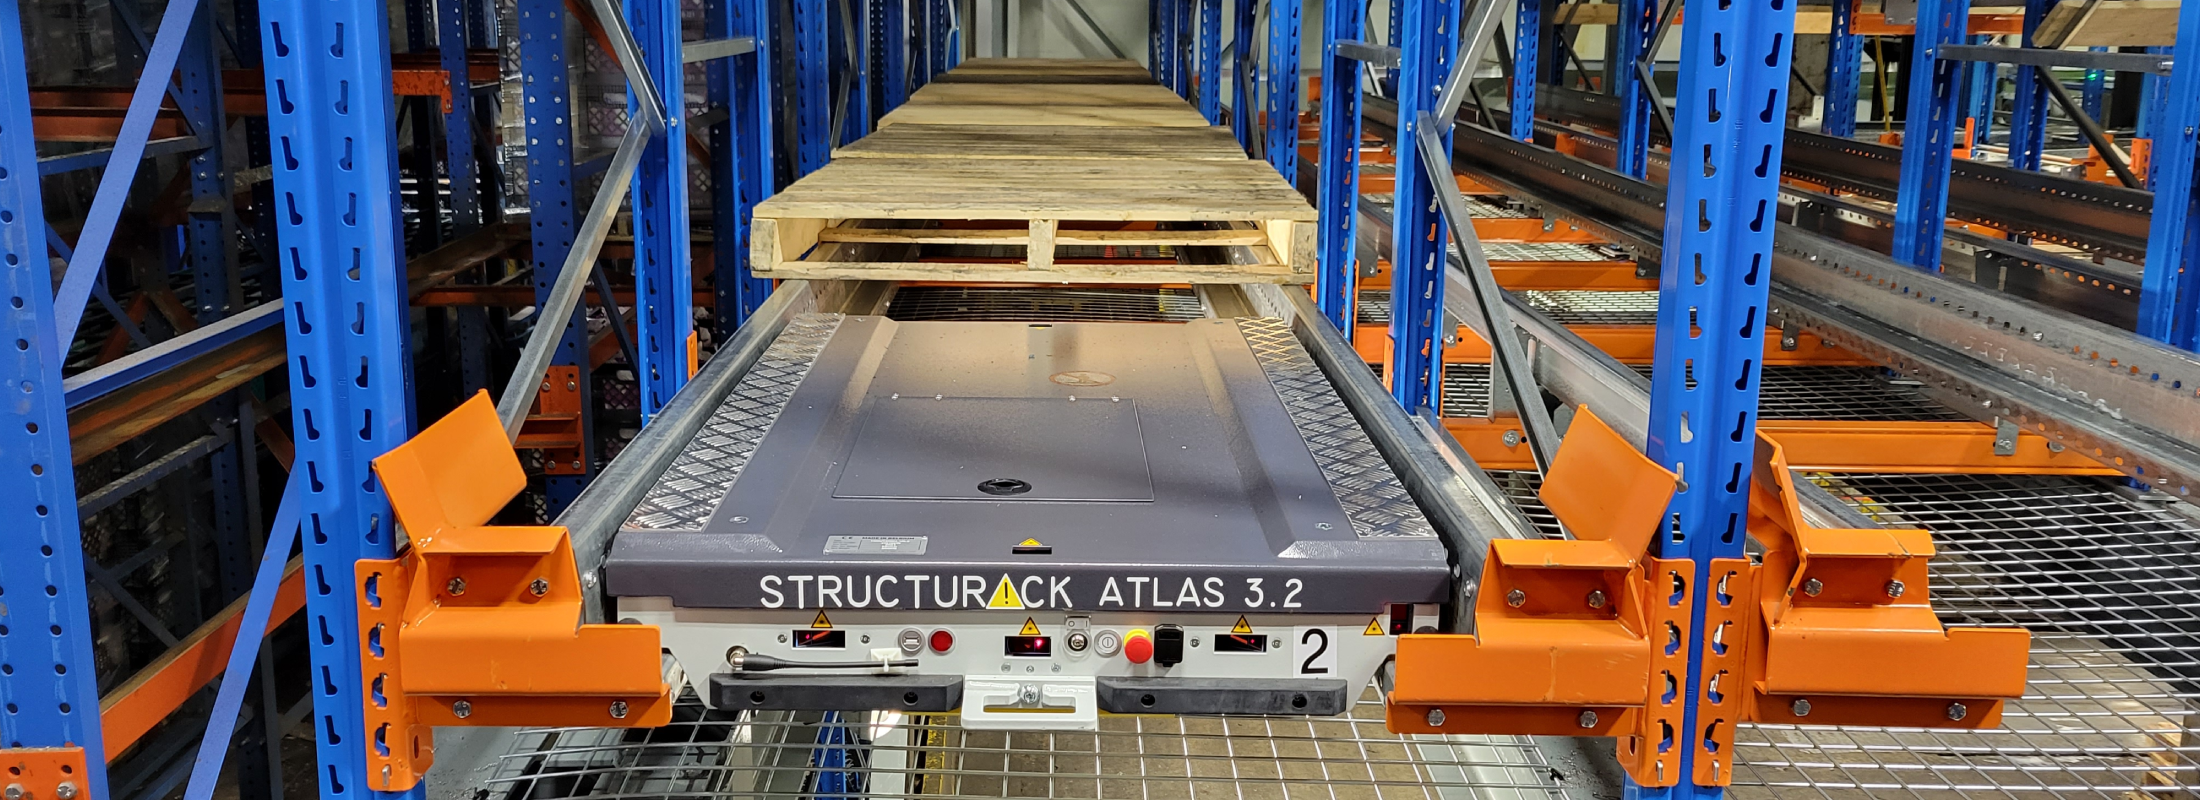 La nouvelle navette Structurack Atlas est maintenant disponible